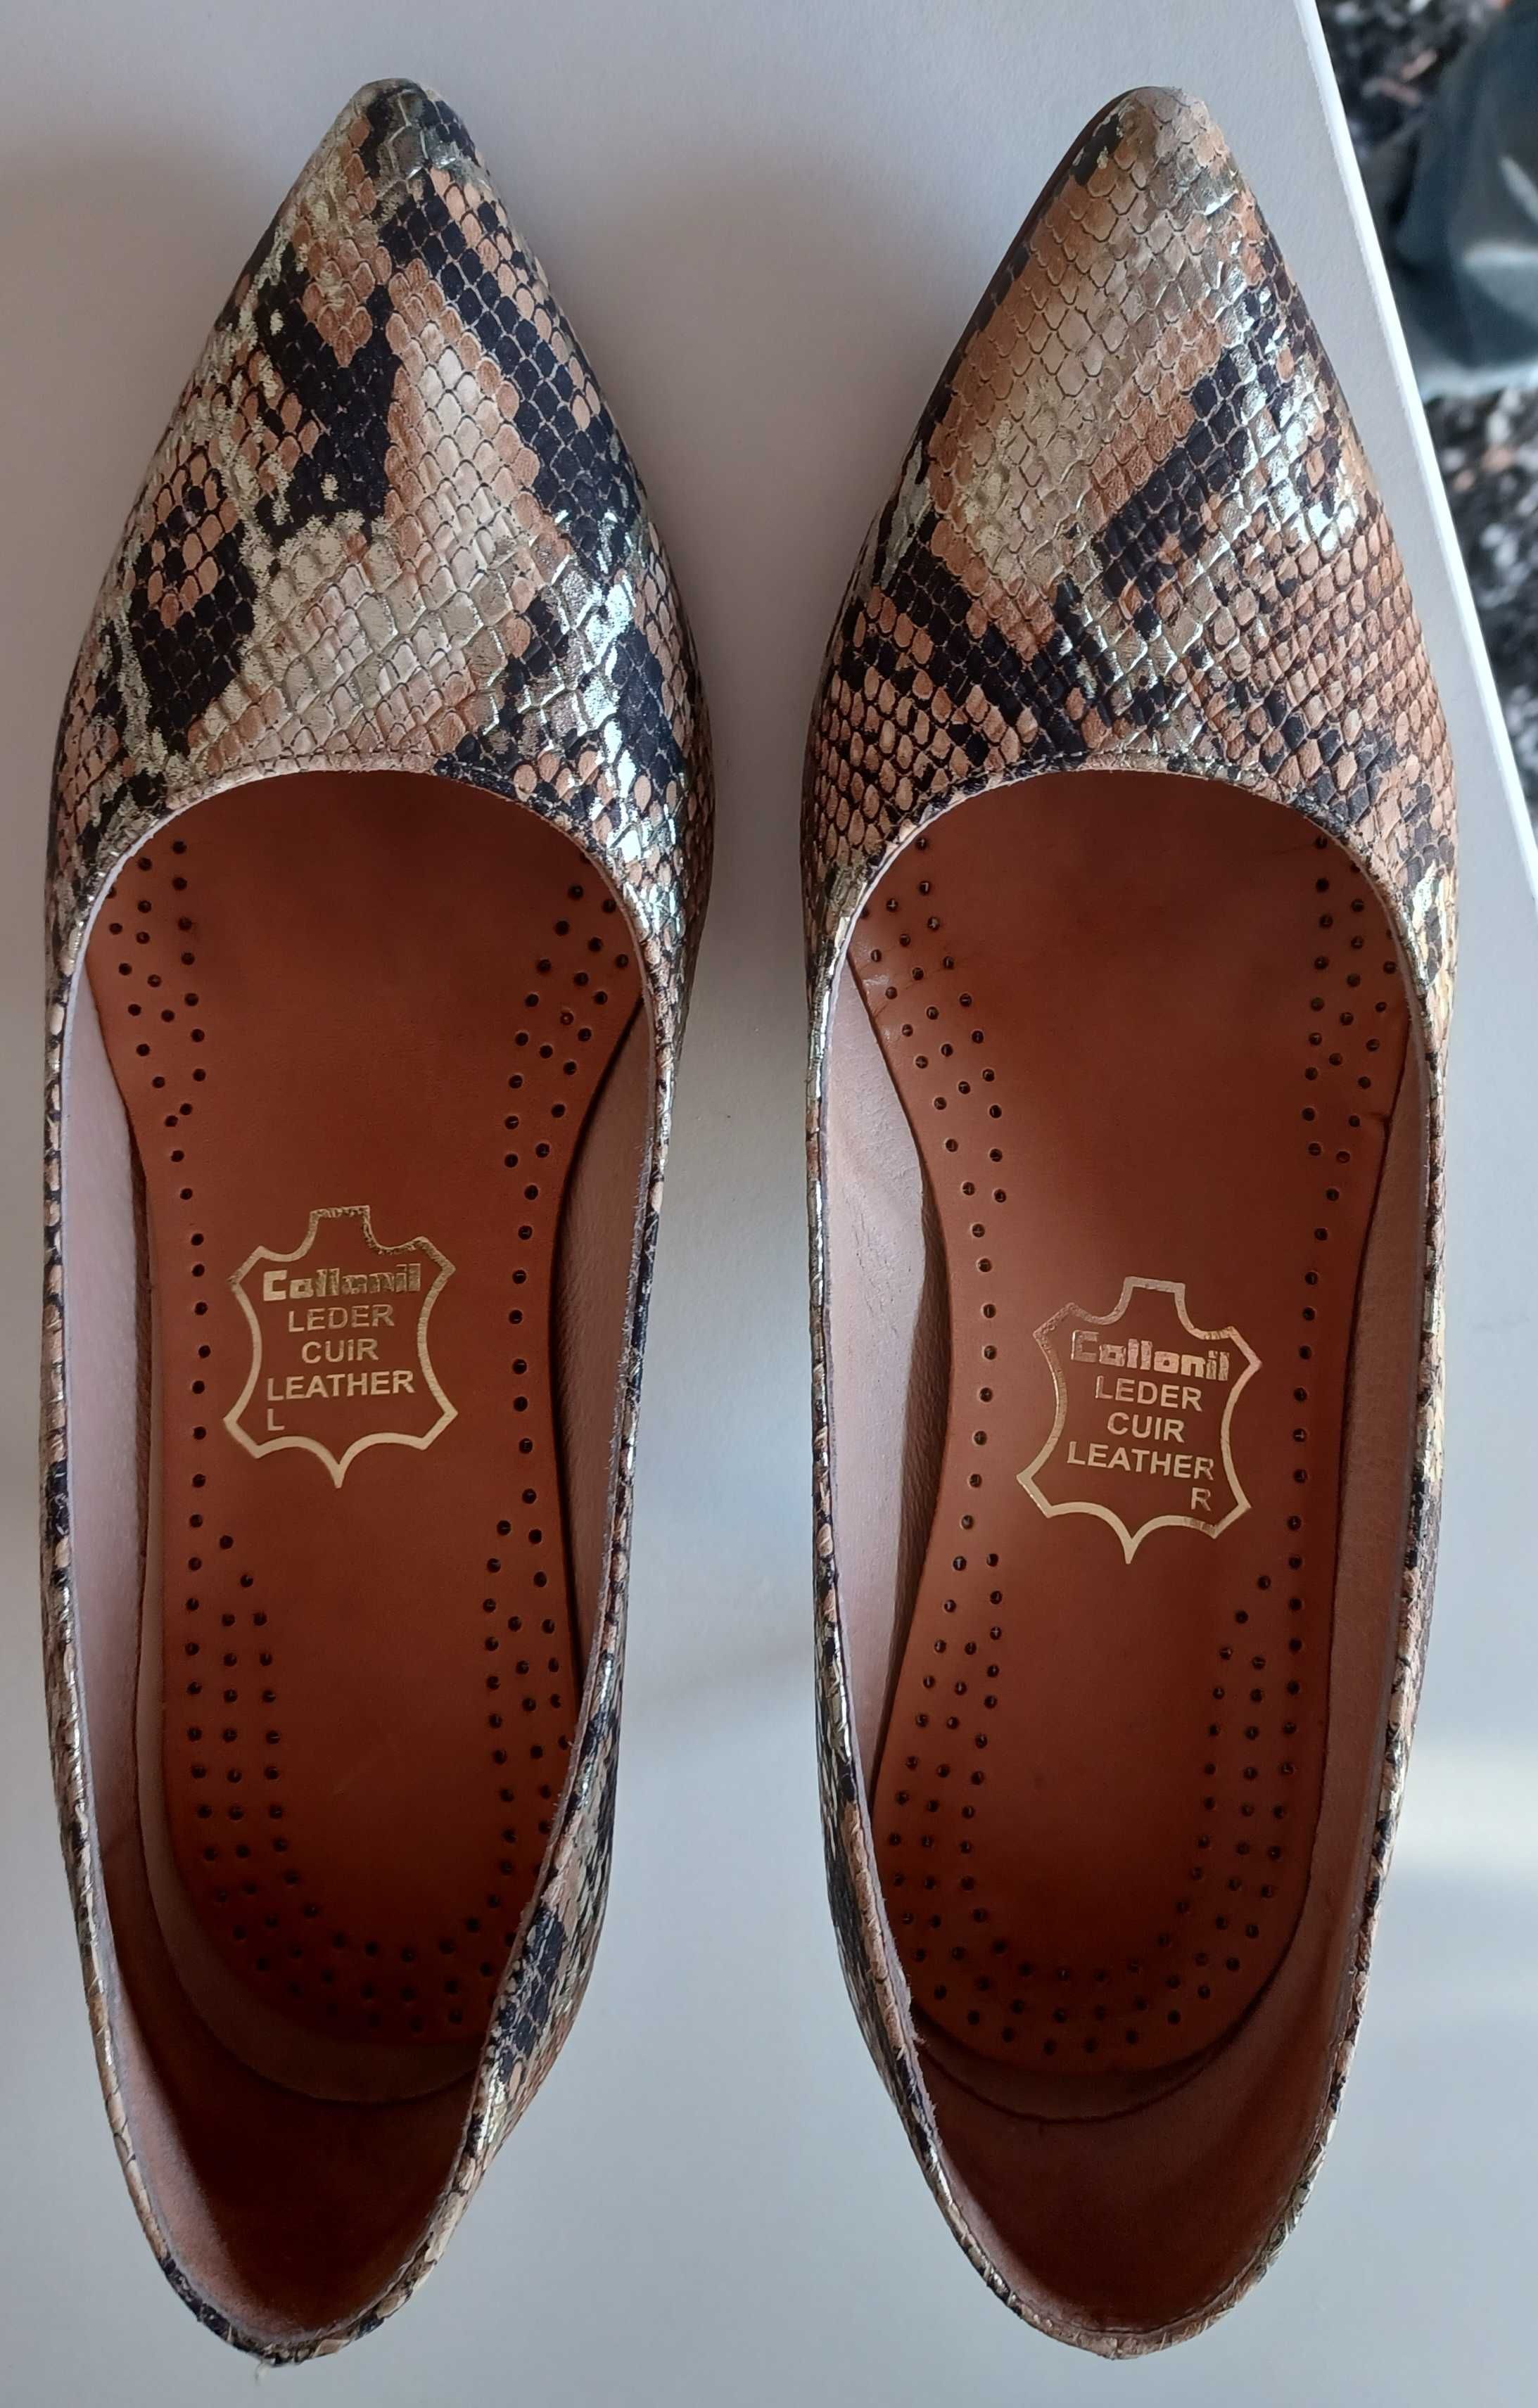 Sapatos Mulher - padrão "tigreza" - Sofia Costa - Tamanho 35